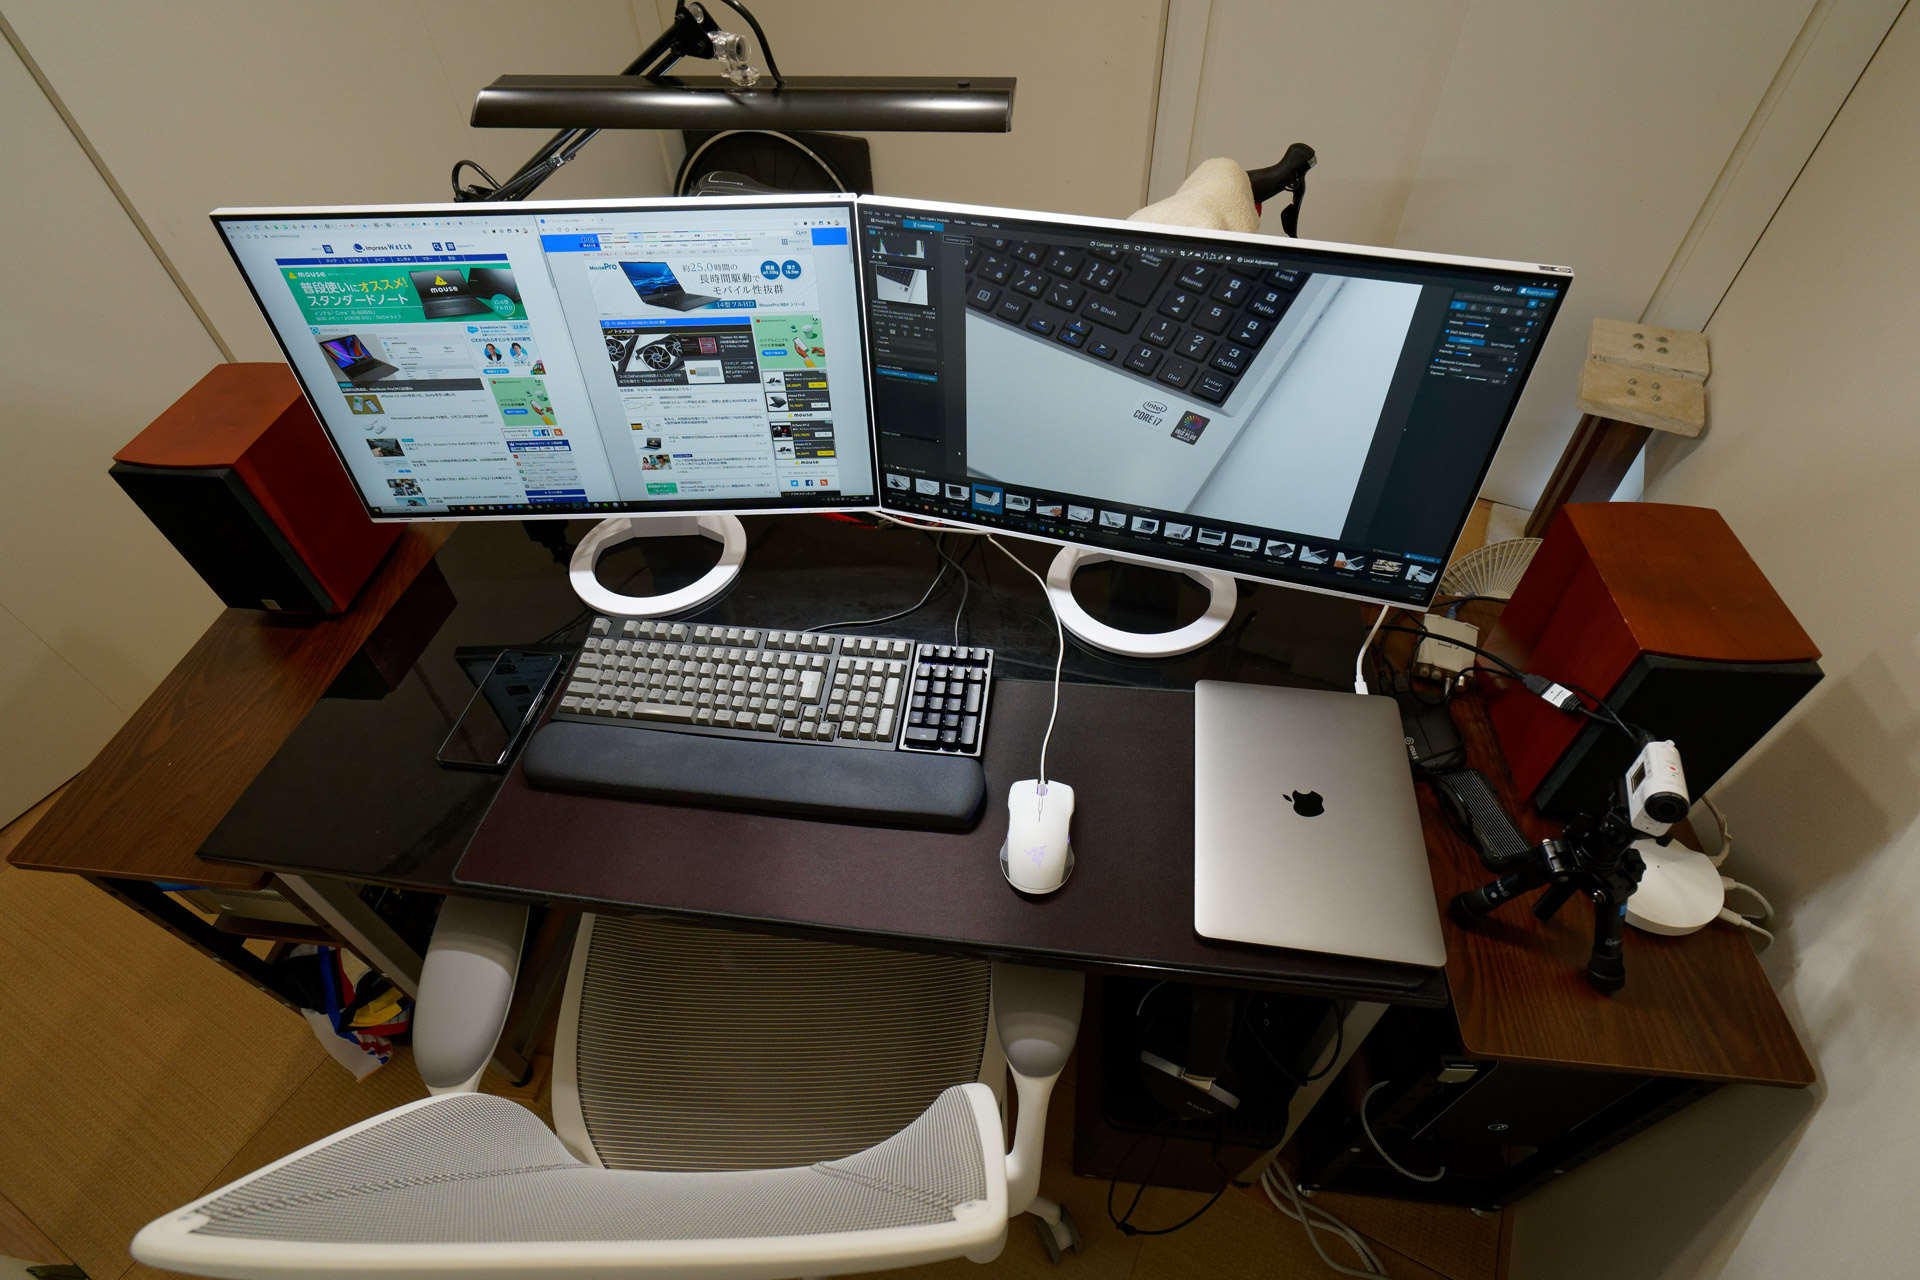 Dual monitors using Desktop 1